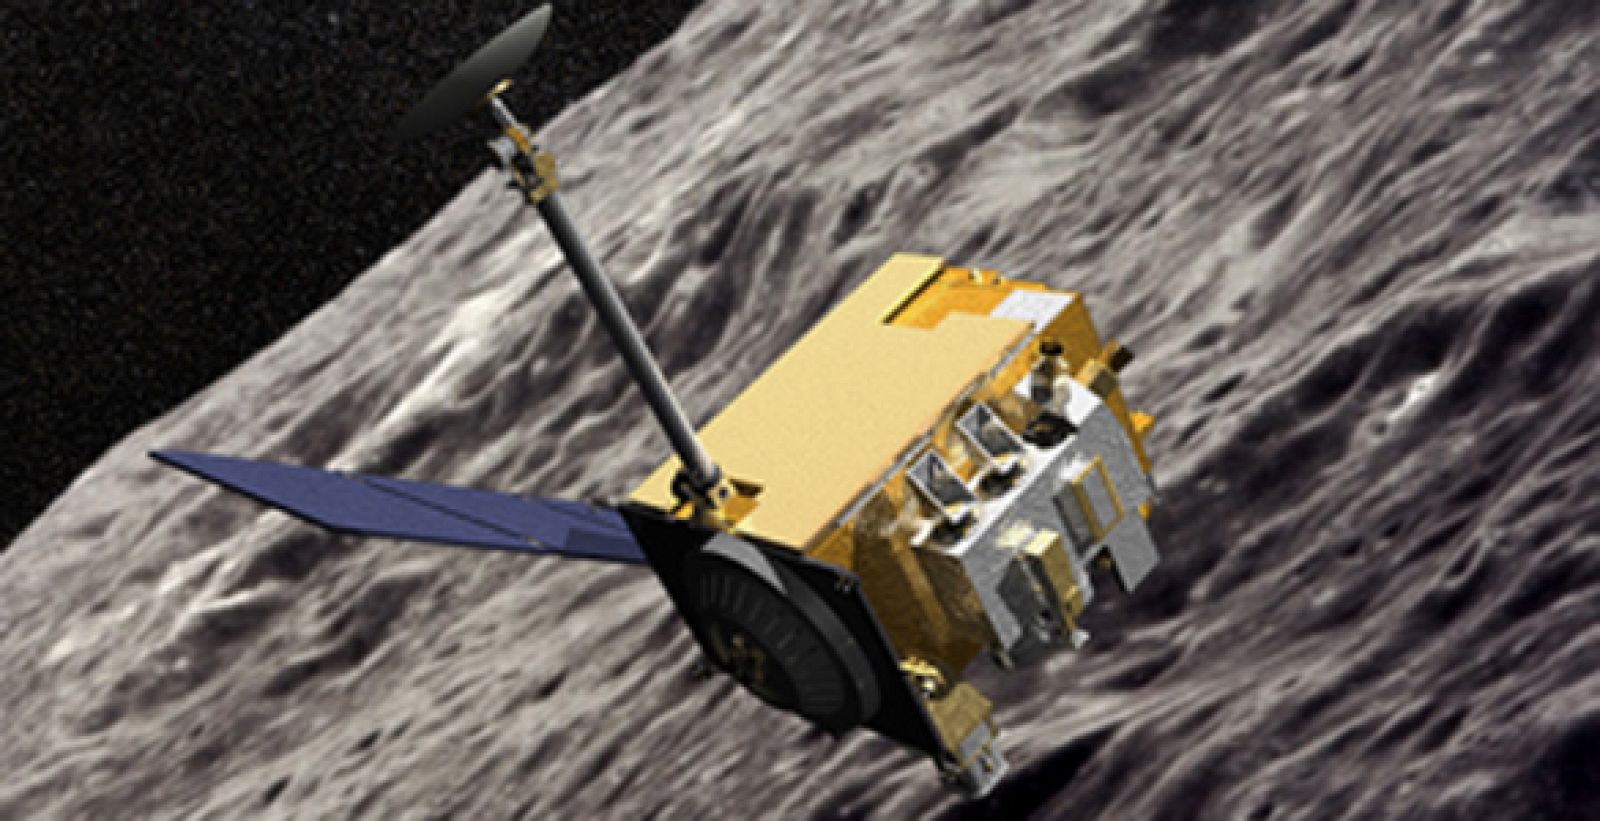 Recreación de la Órbita de Reconocimiento Lunar, que ha descubierto la presencia de Helio en la atmósfera del satélite